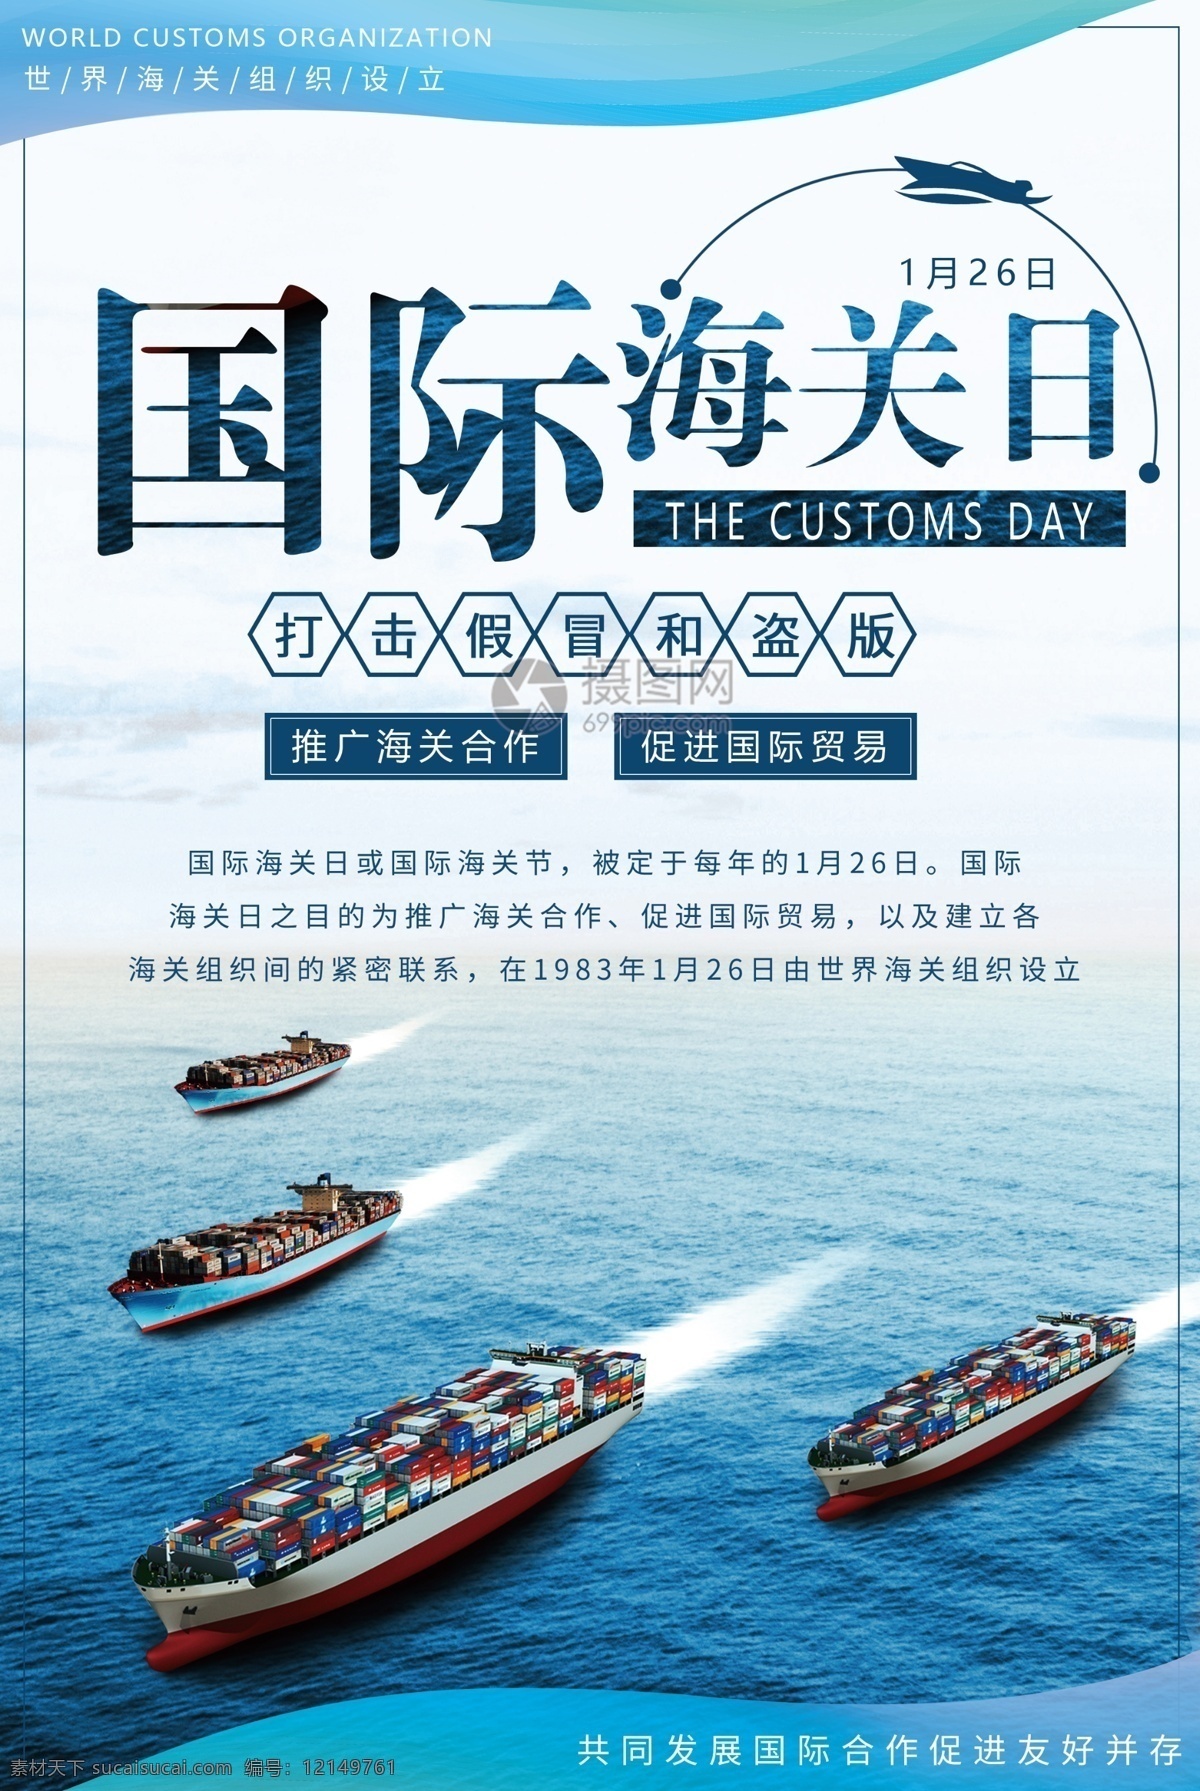 国际 海关 日 宣传海报 国际海关日 海上贸易 游轮 货轮 海关组织 节日 纪念日 国际合作 经济发展